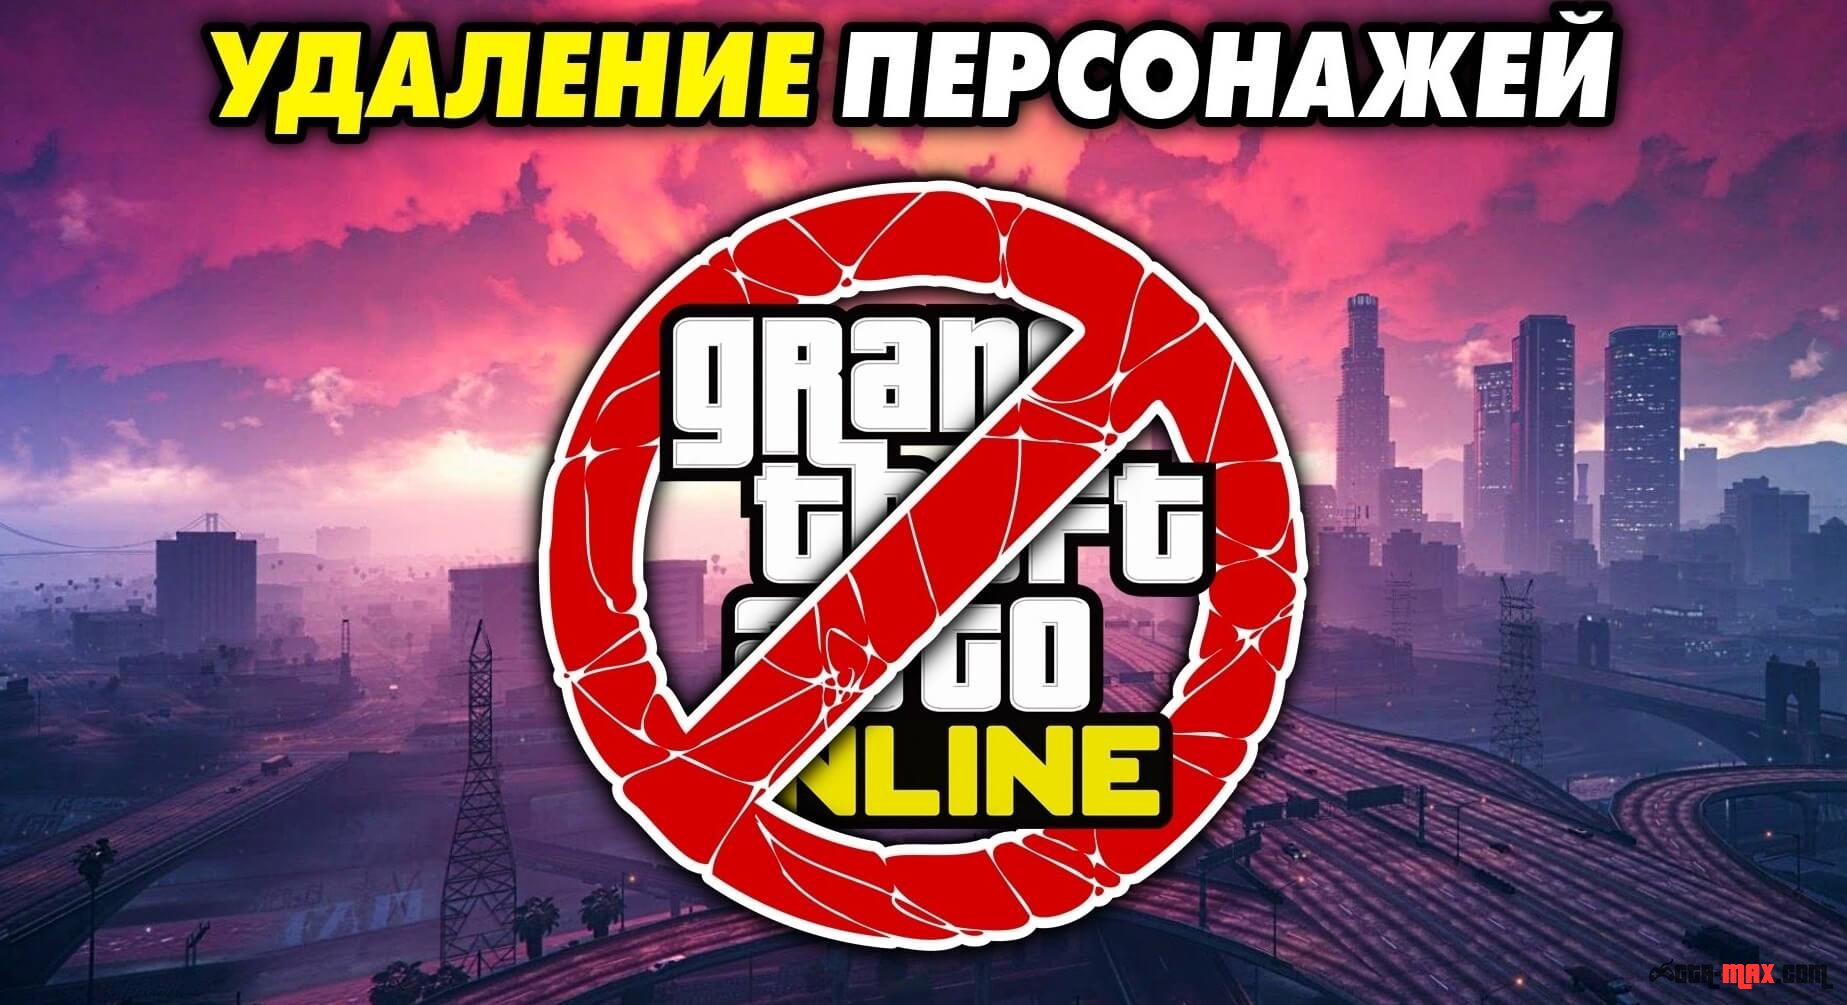 Rockstar удаляет персонажей и списывает деньги из-за глитча с фишками в GTA Online